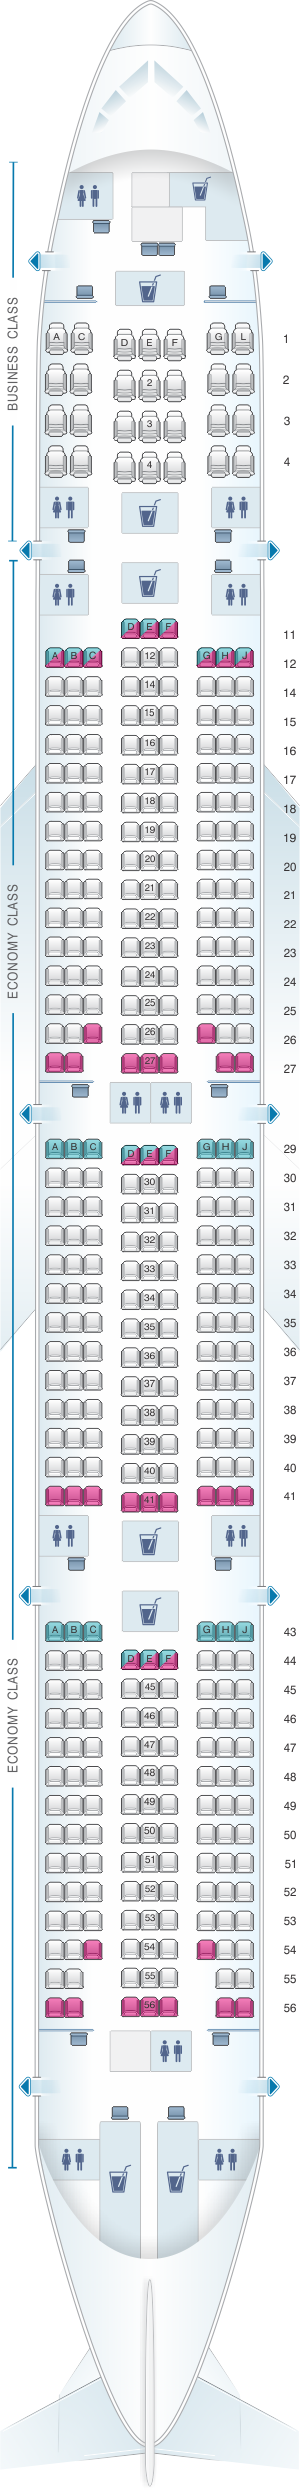 Seat map for Kenya Airways Boeing B777 300ER